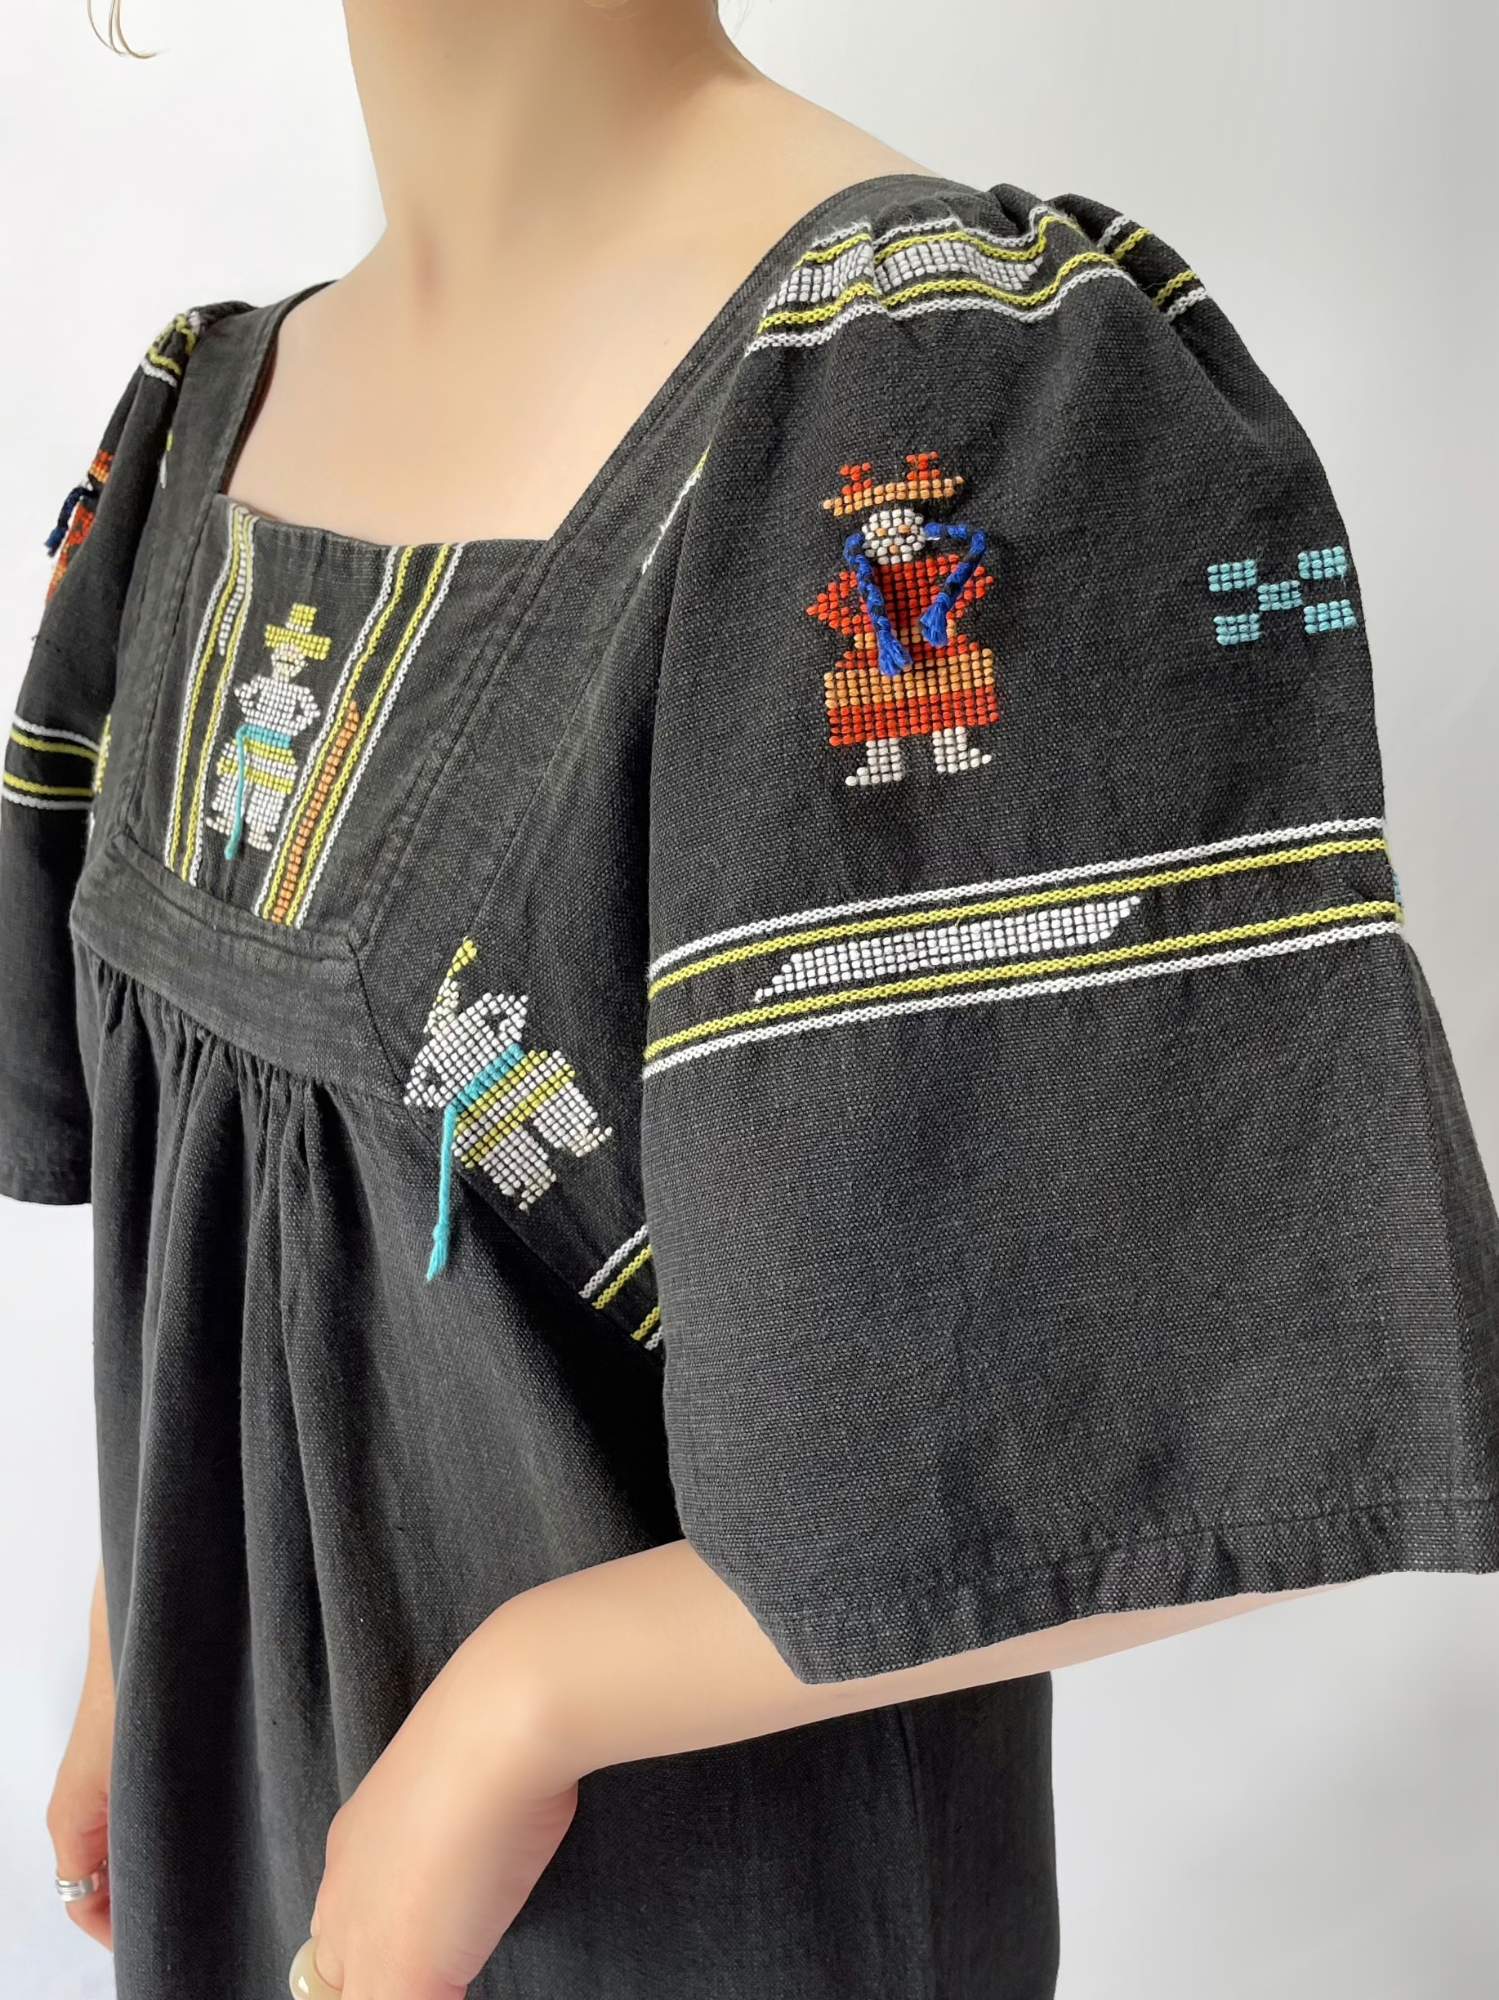 グァテマラ 民族衣装 ウィピル ポンチョ ハンドメイド 刺繍 手刺繍 希少-